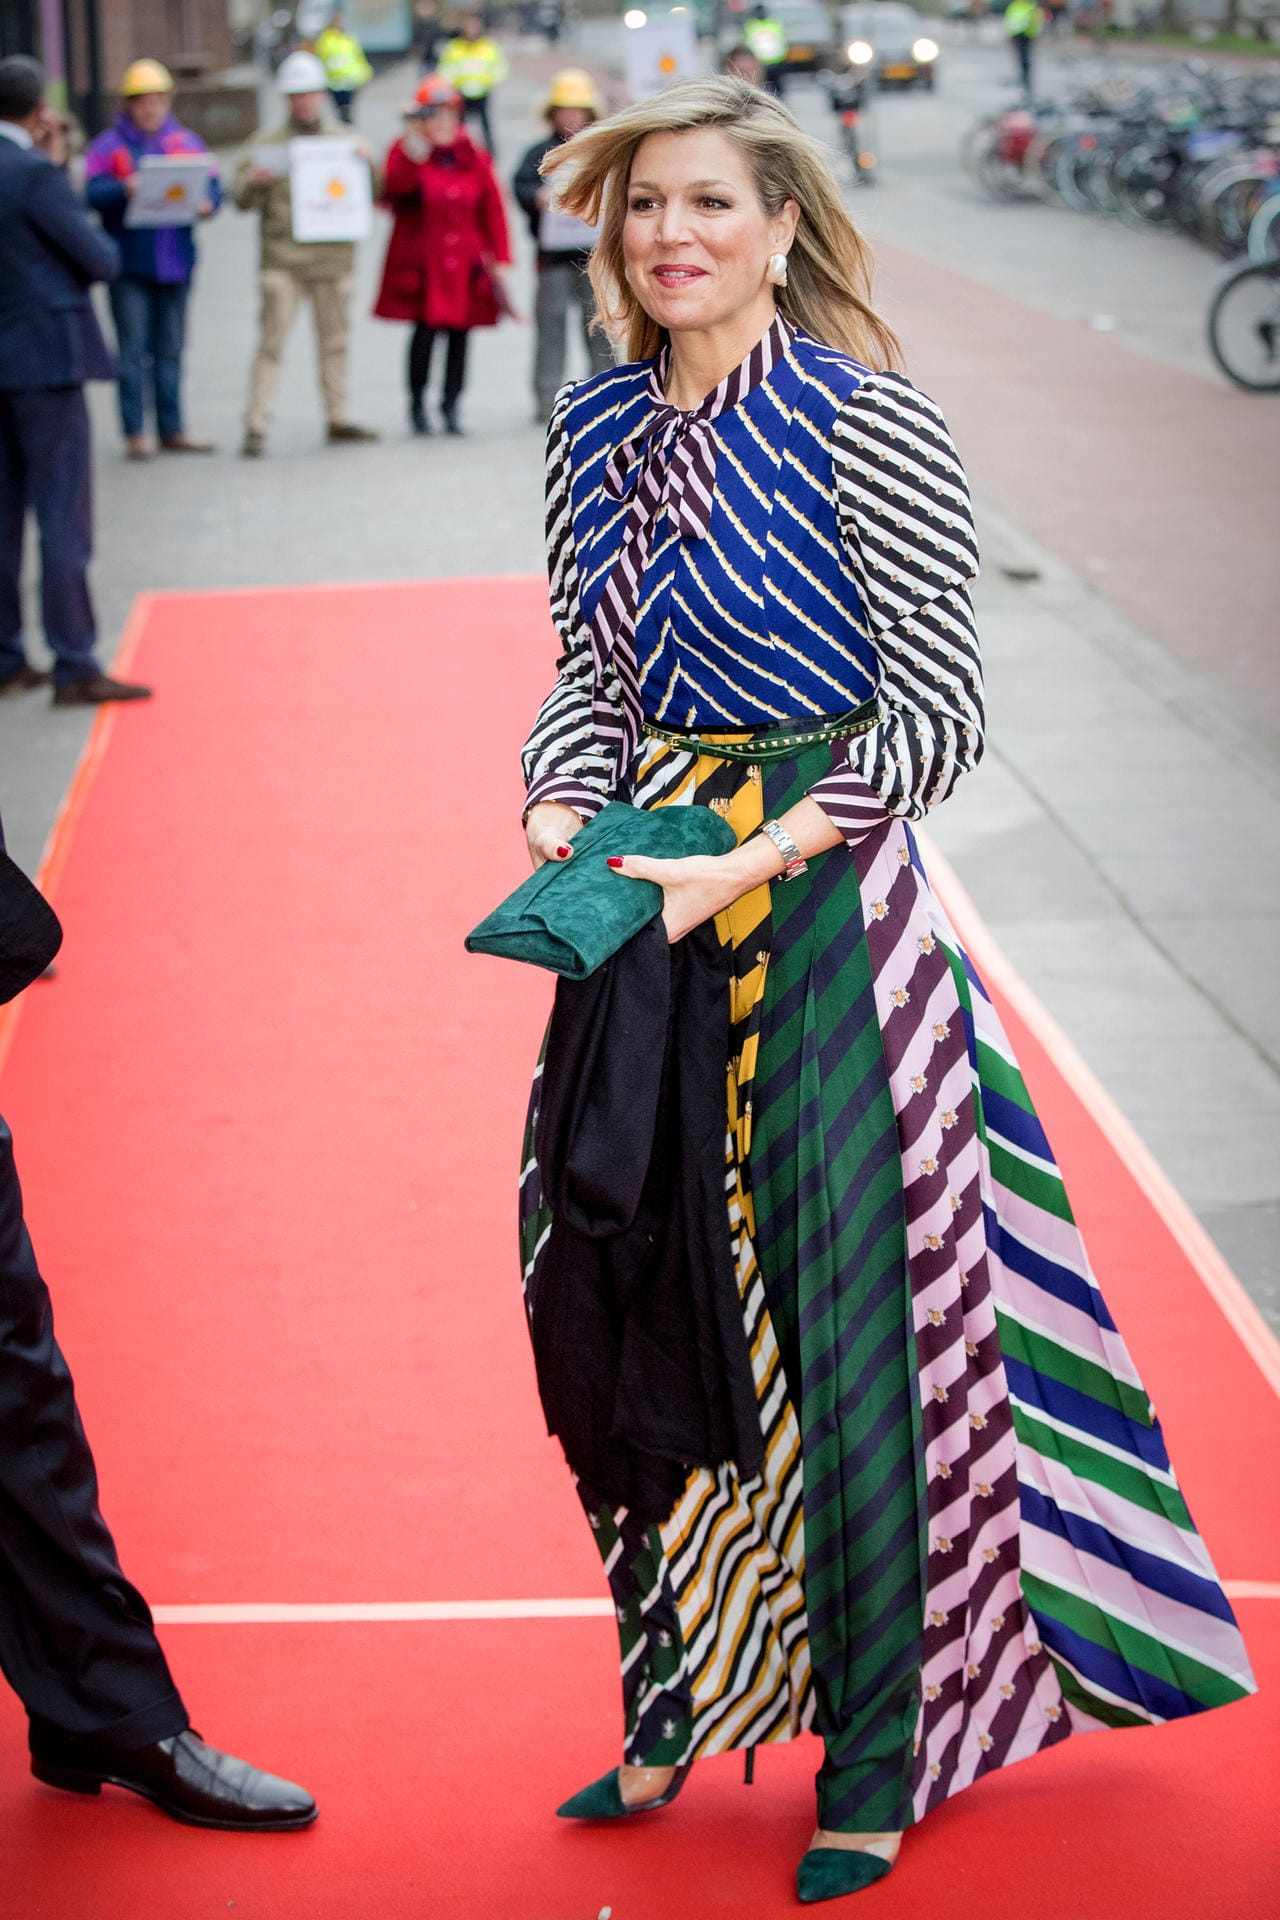 Königin Maxima der Niederlande auf dem Weg zu einem Konzert im April 2018 in Groningen